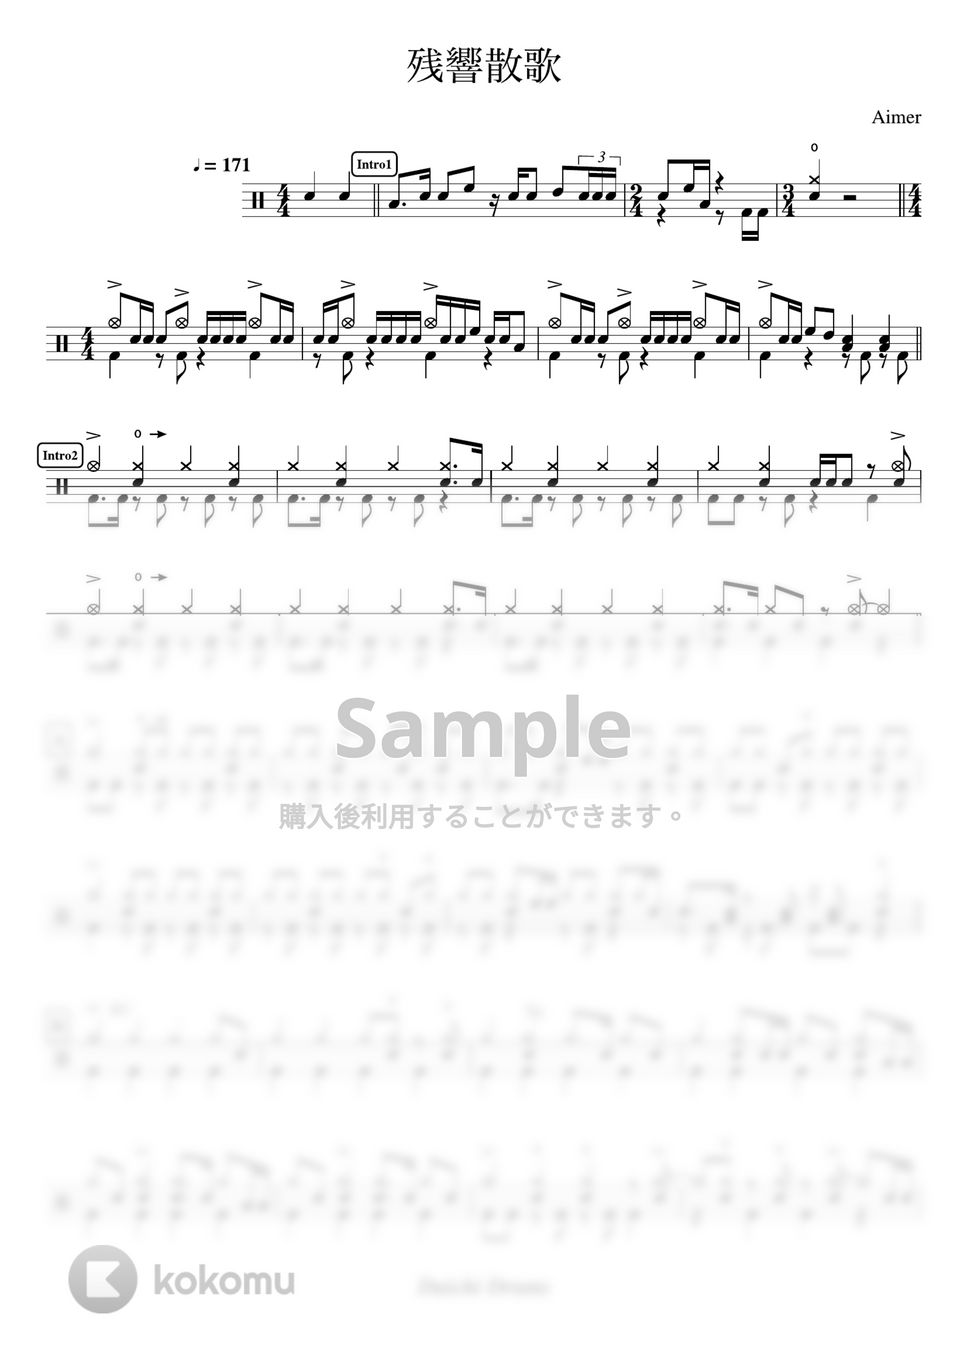 鬼滅の刃 - 残響散歌 by Daichi Drums